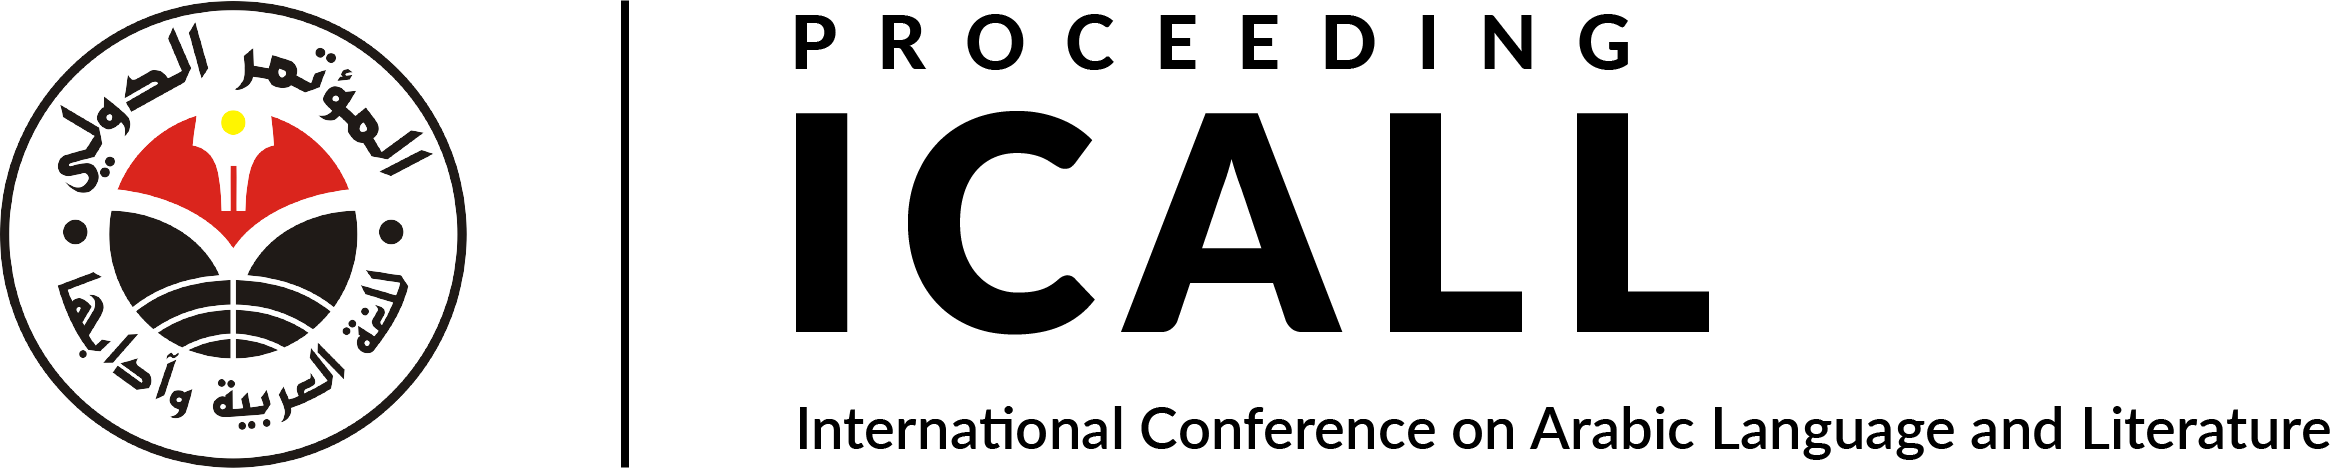 OJS_logo